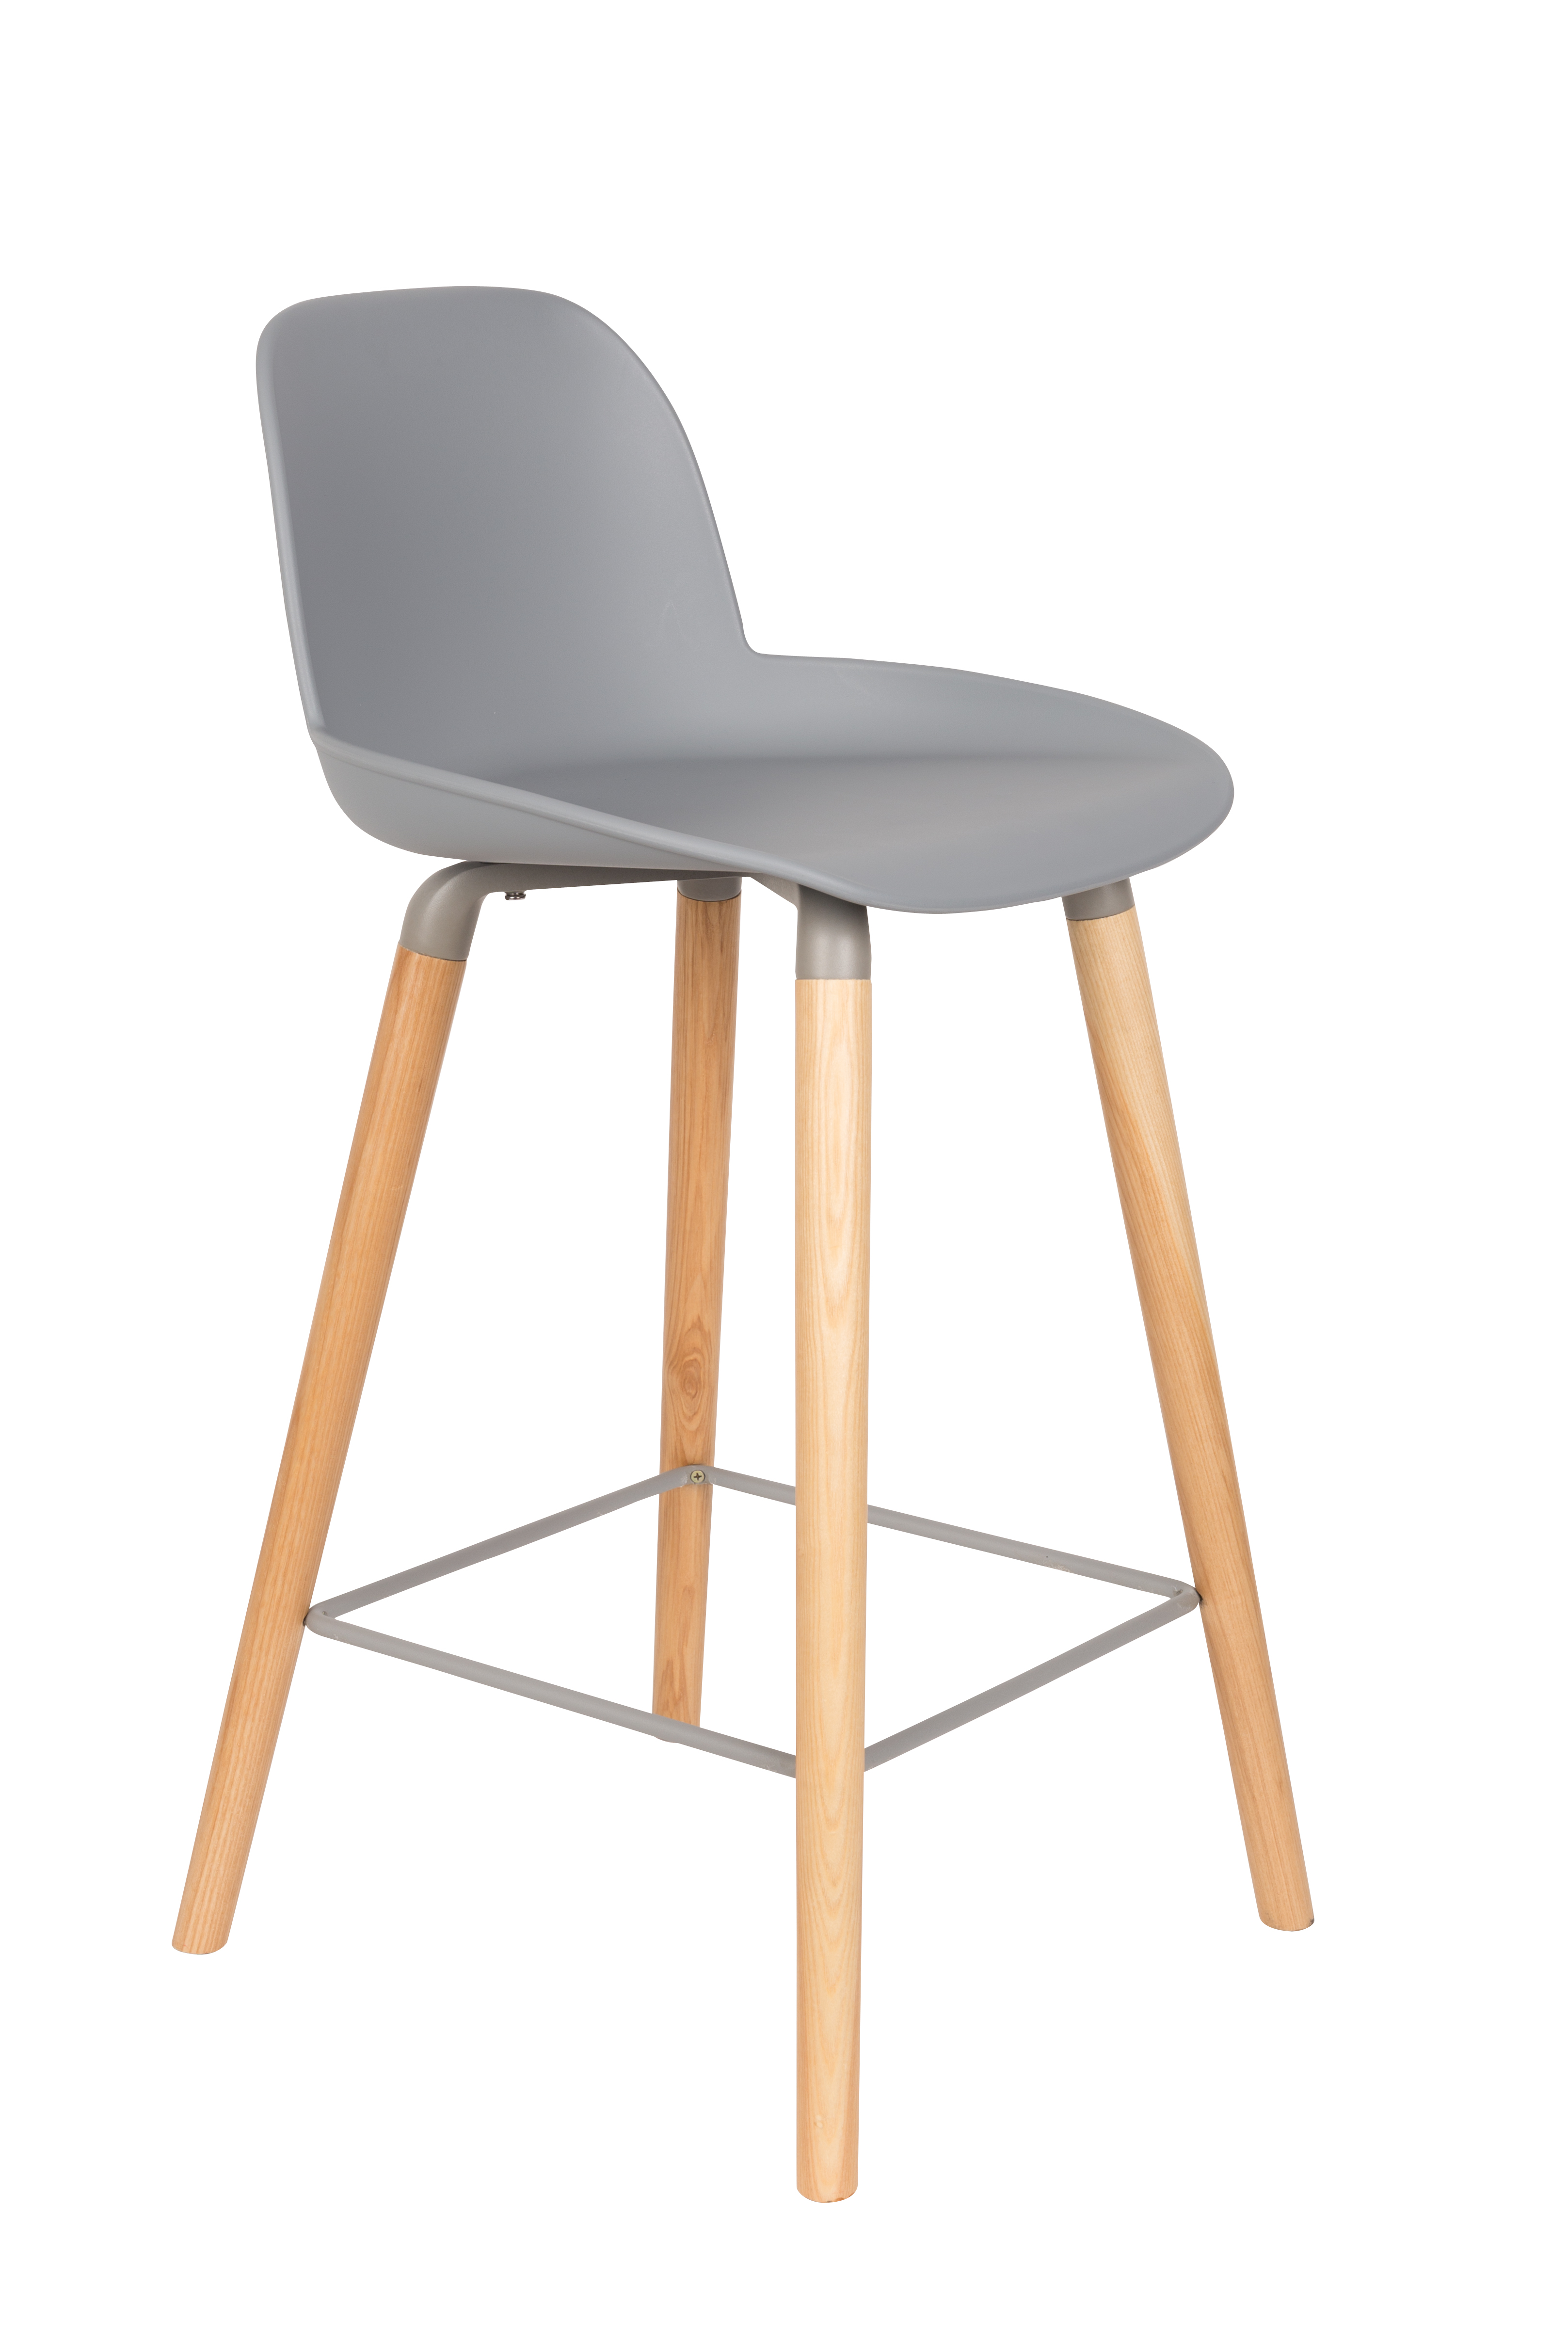 ZUIVER Albert Kuip barstol, m. ryglæn og fodstøtte – lysegrå polypropylen/natur ask (65cm)